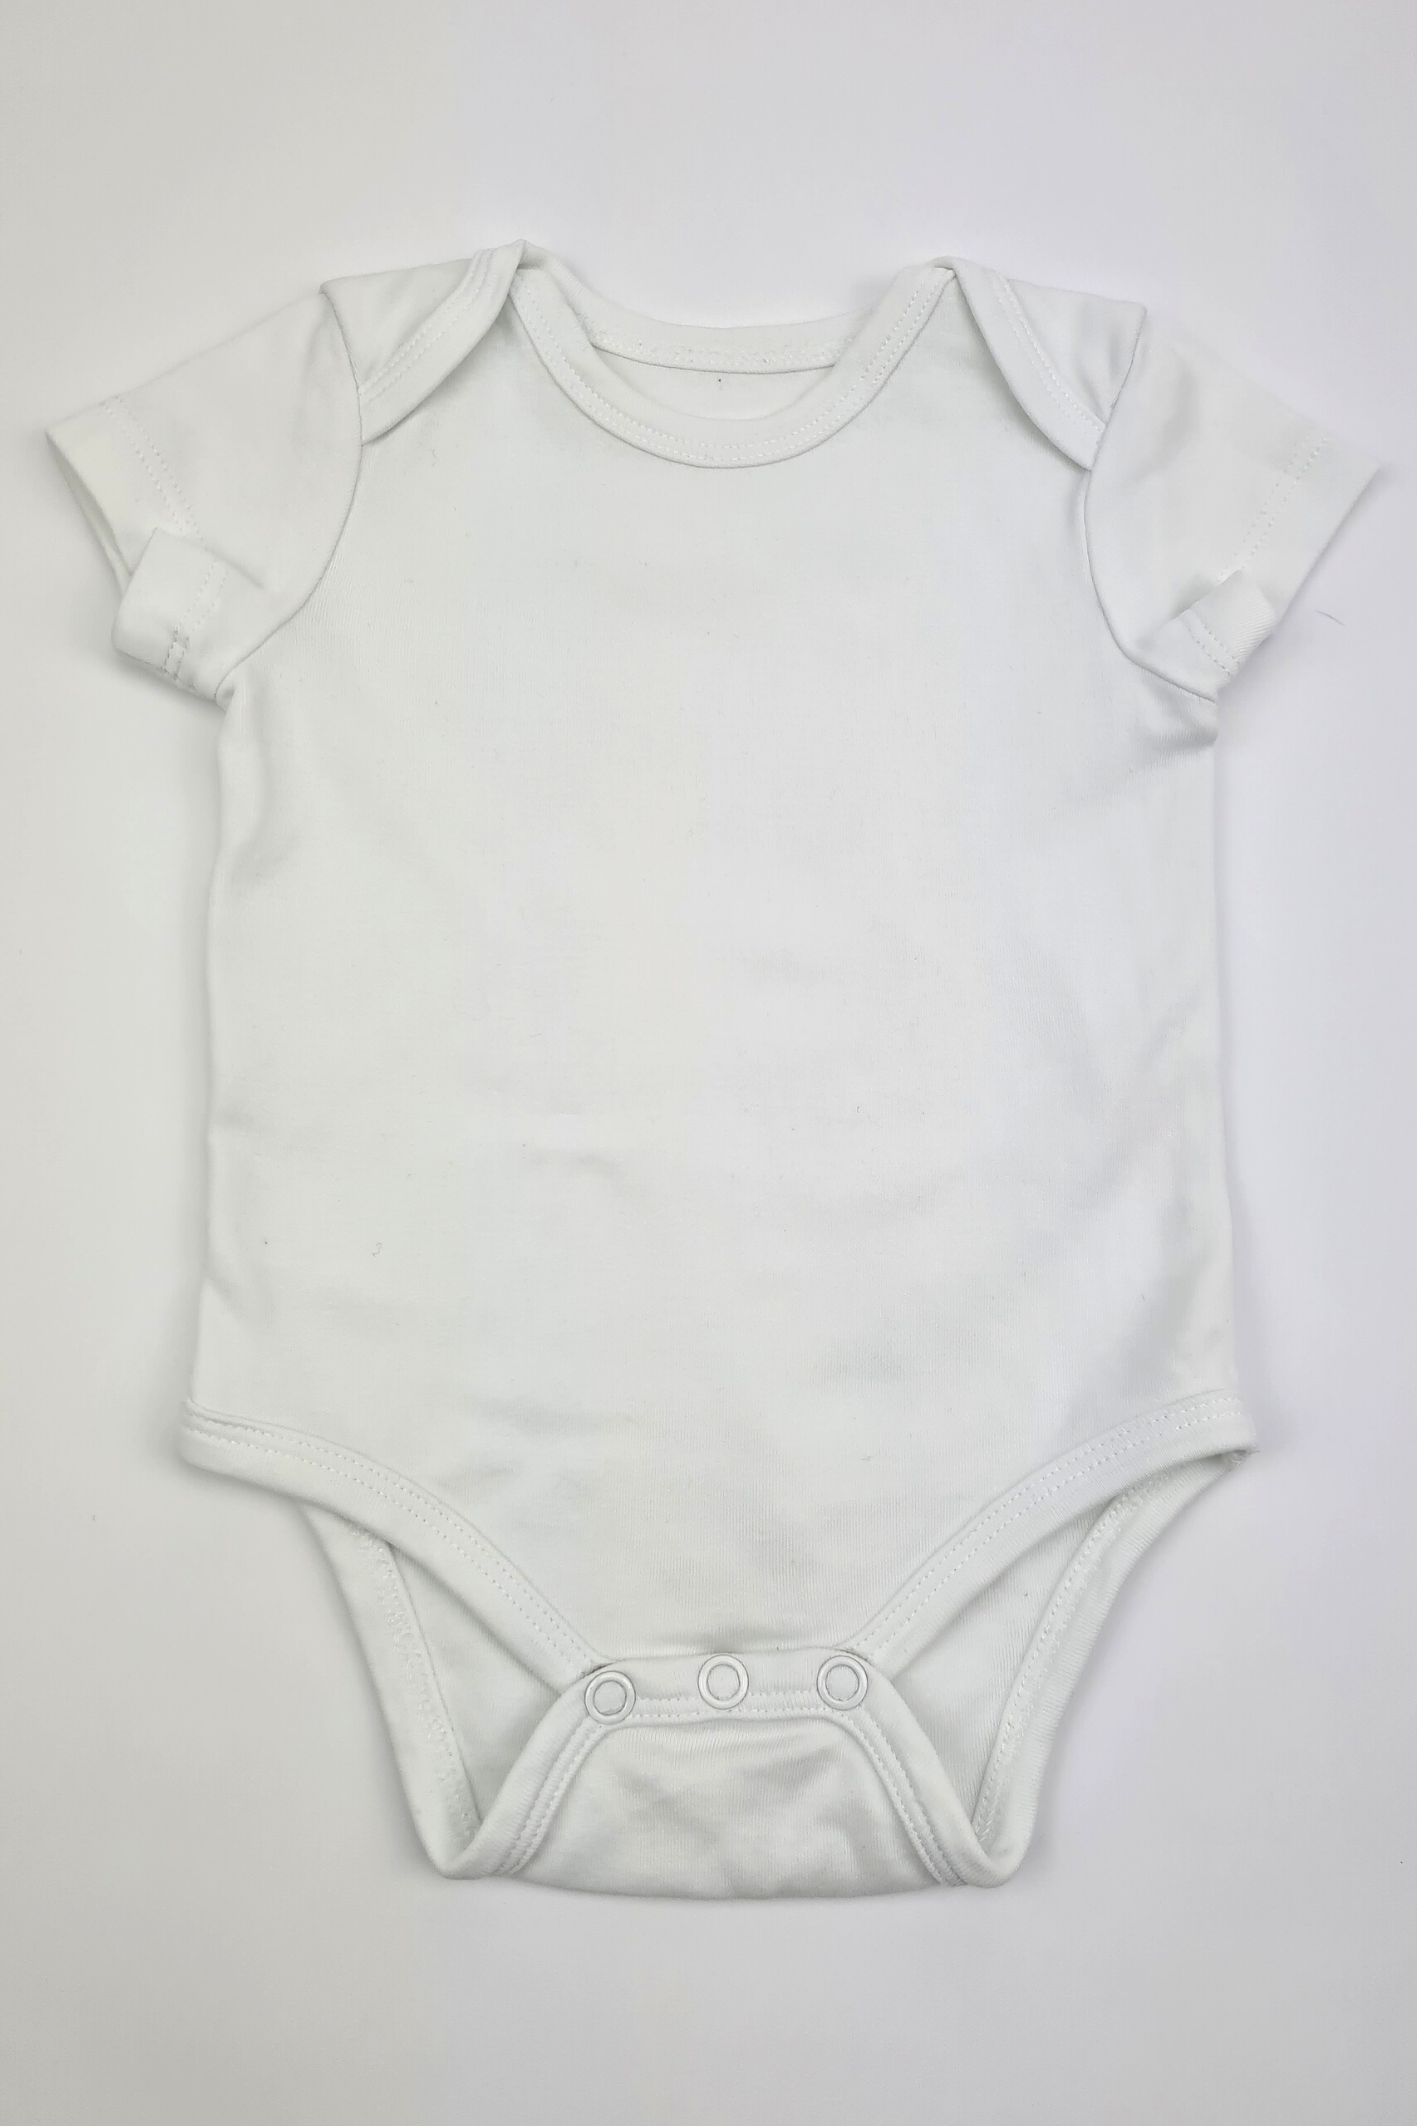 Nouveau-né (10 lb) - Body blanc à manches courtes 100 % coton (Scottish Baby Box)